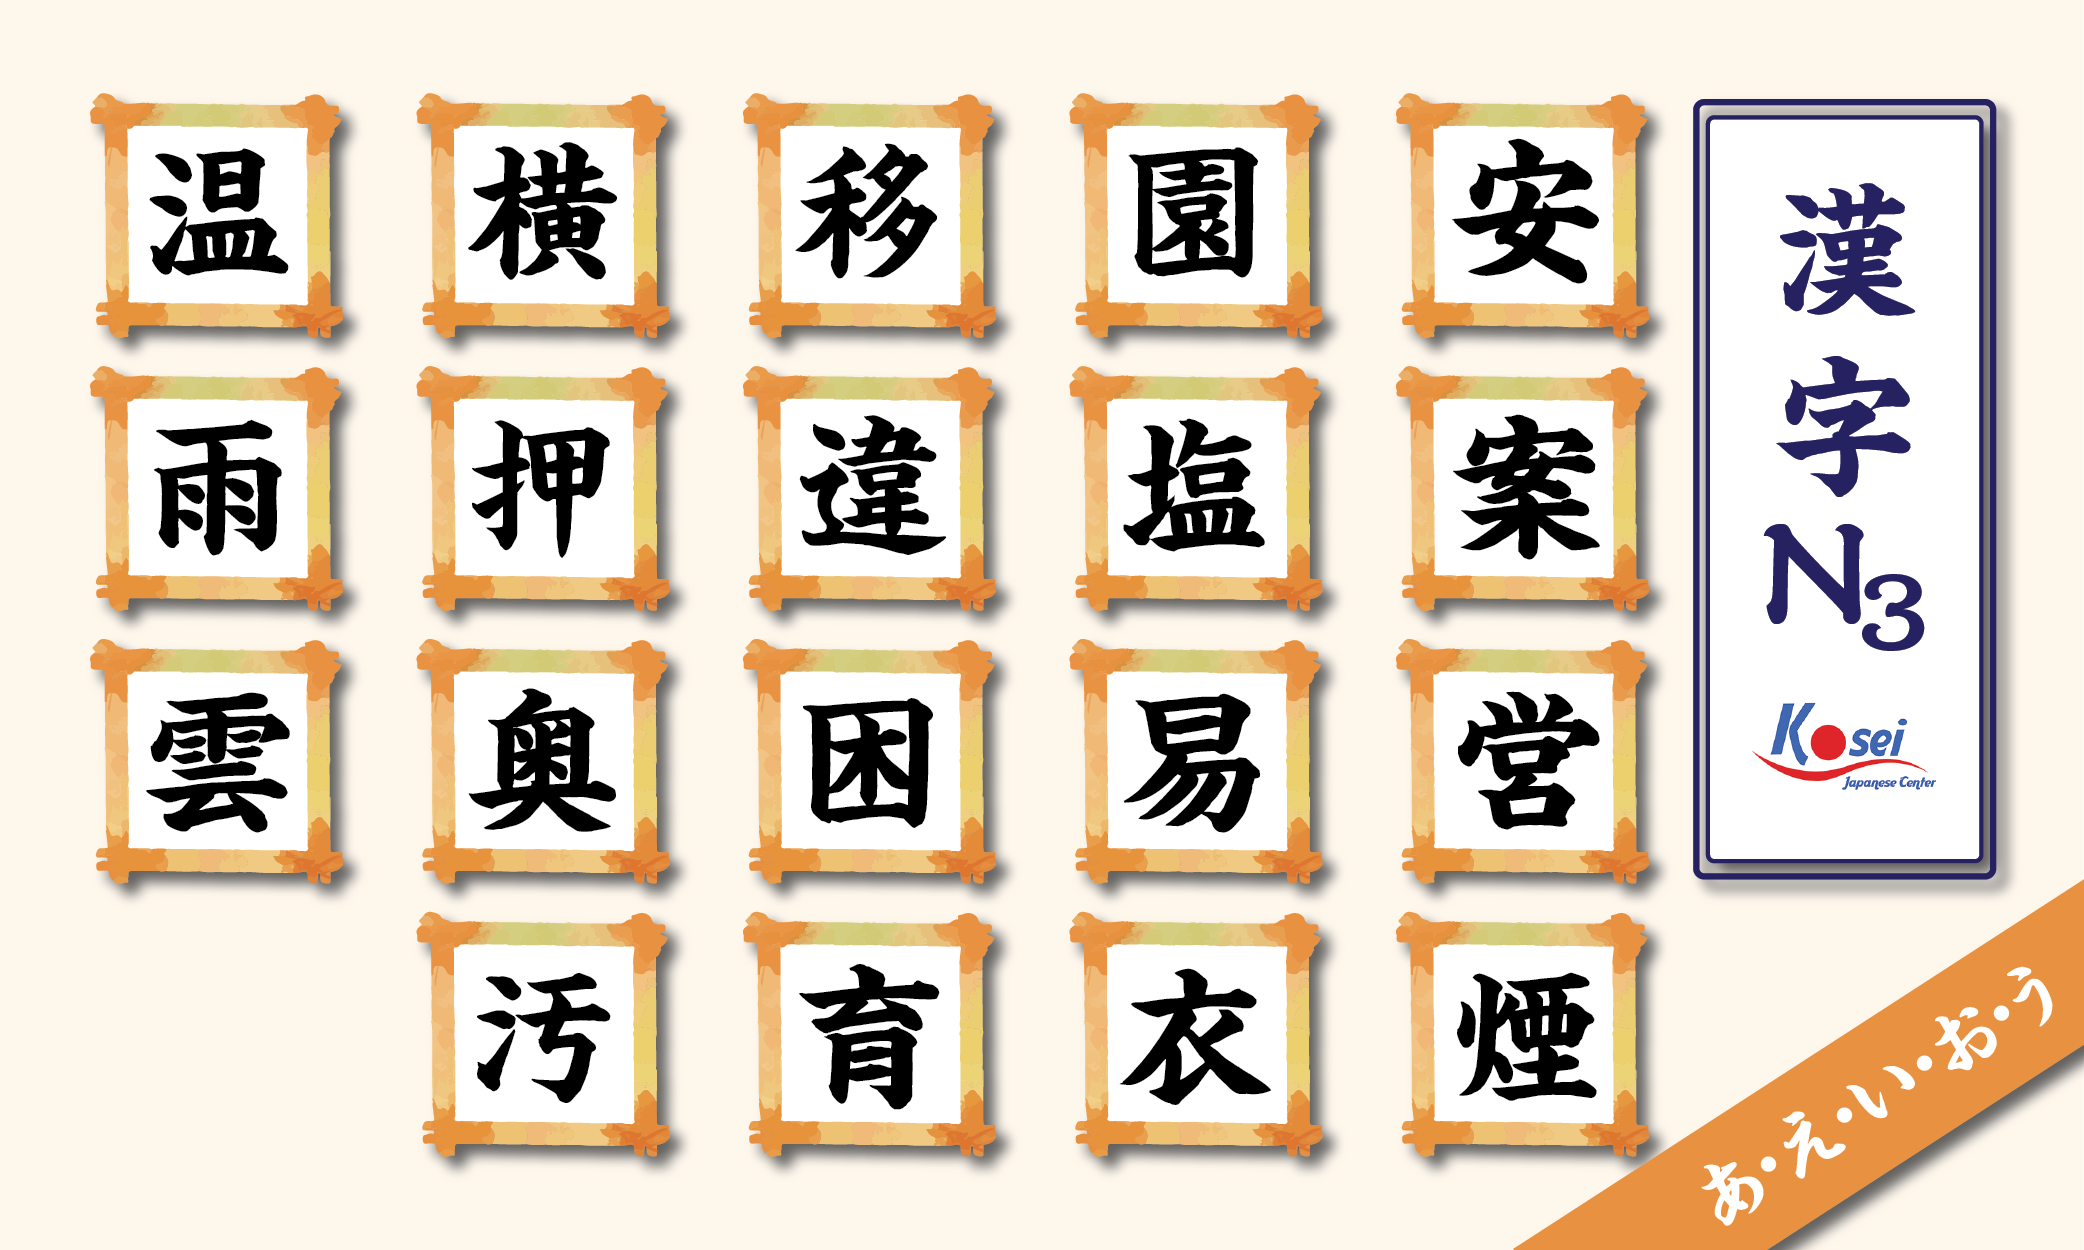 kanji n3 theo âm on a- e- i- o- u-